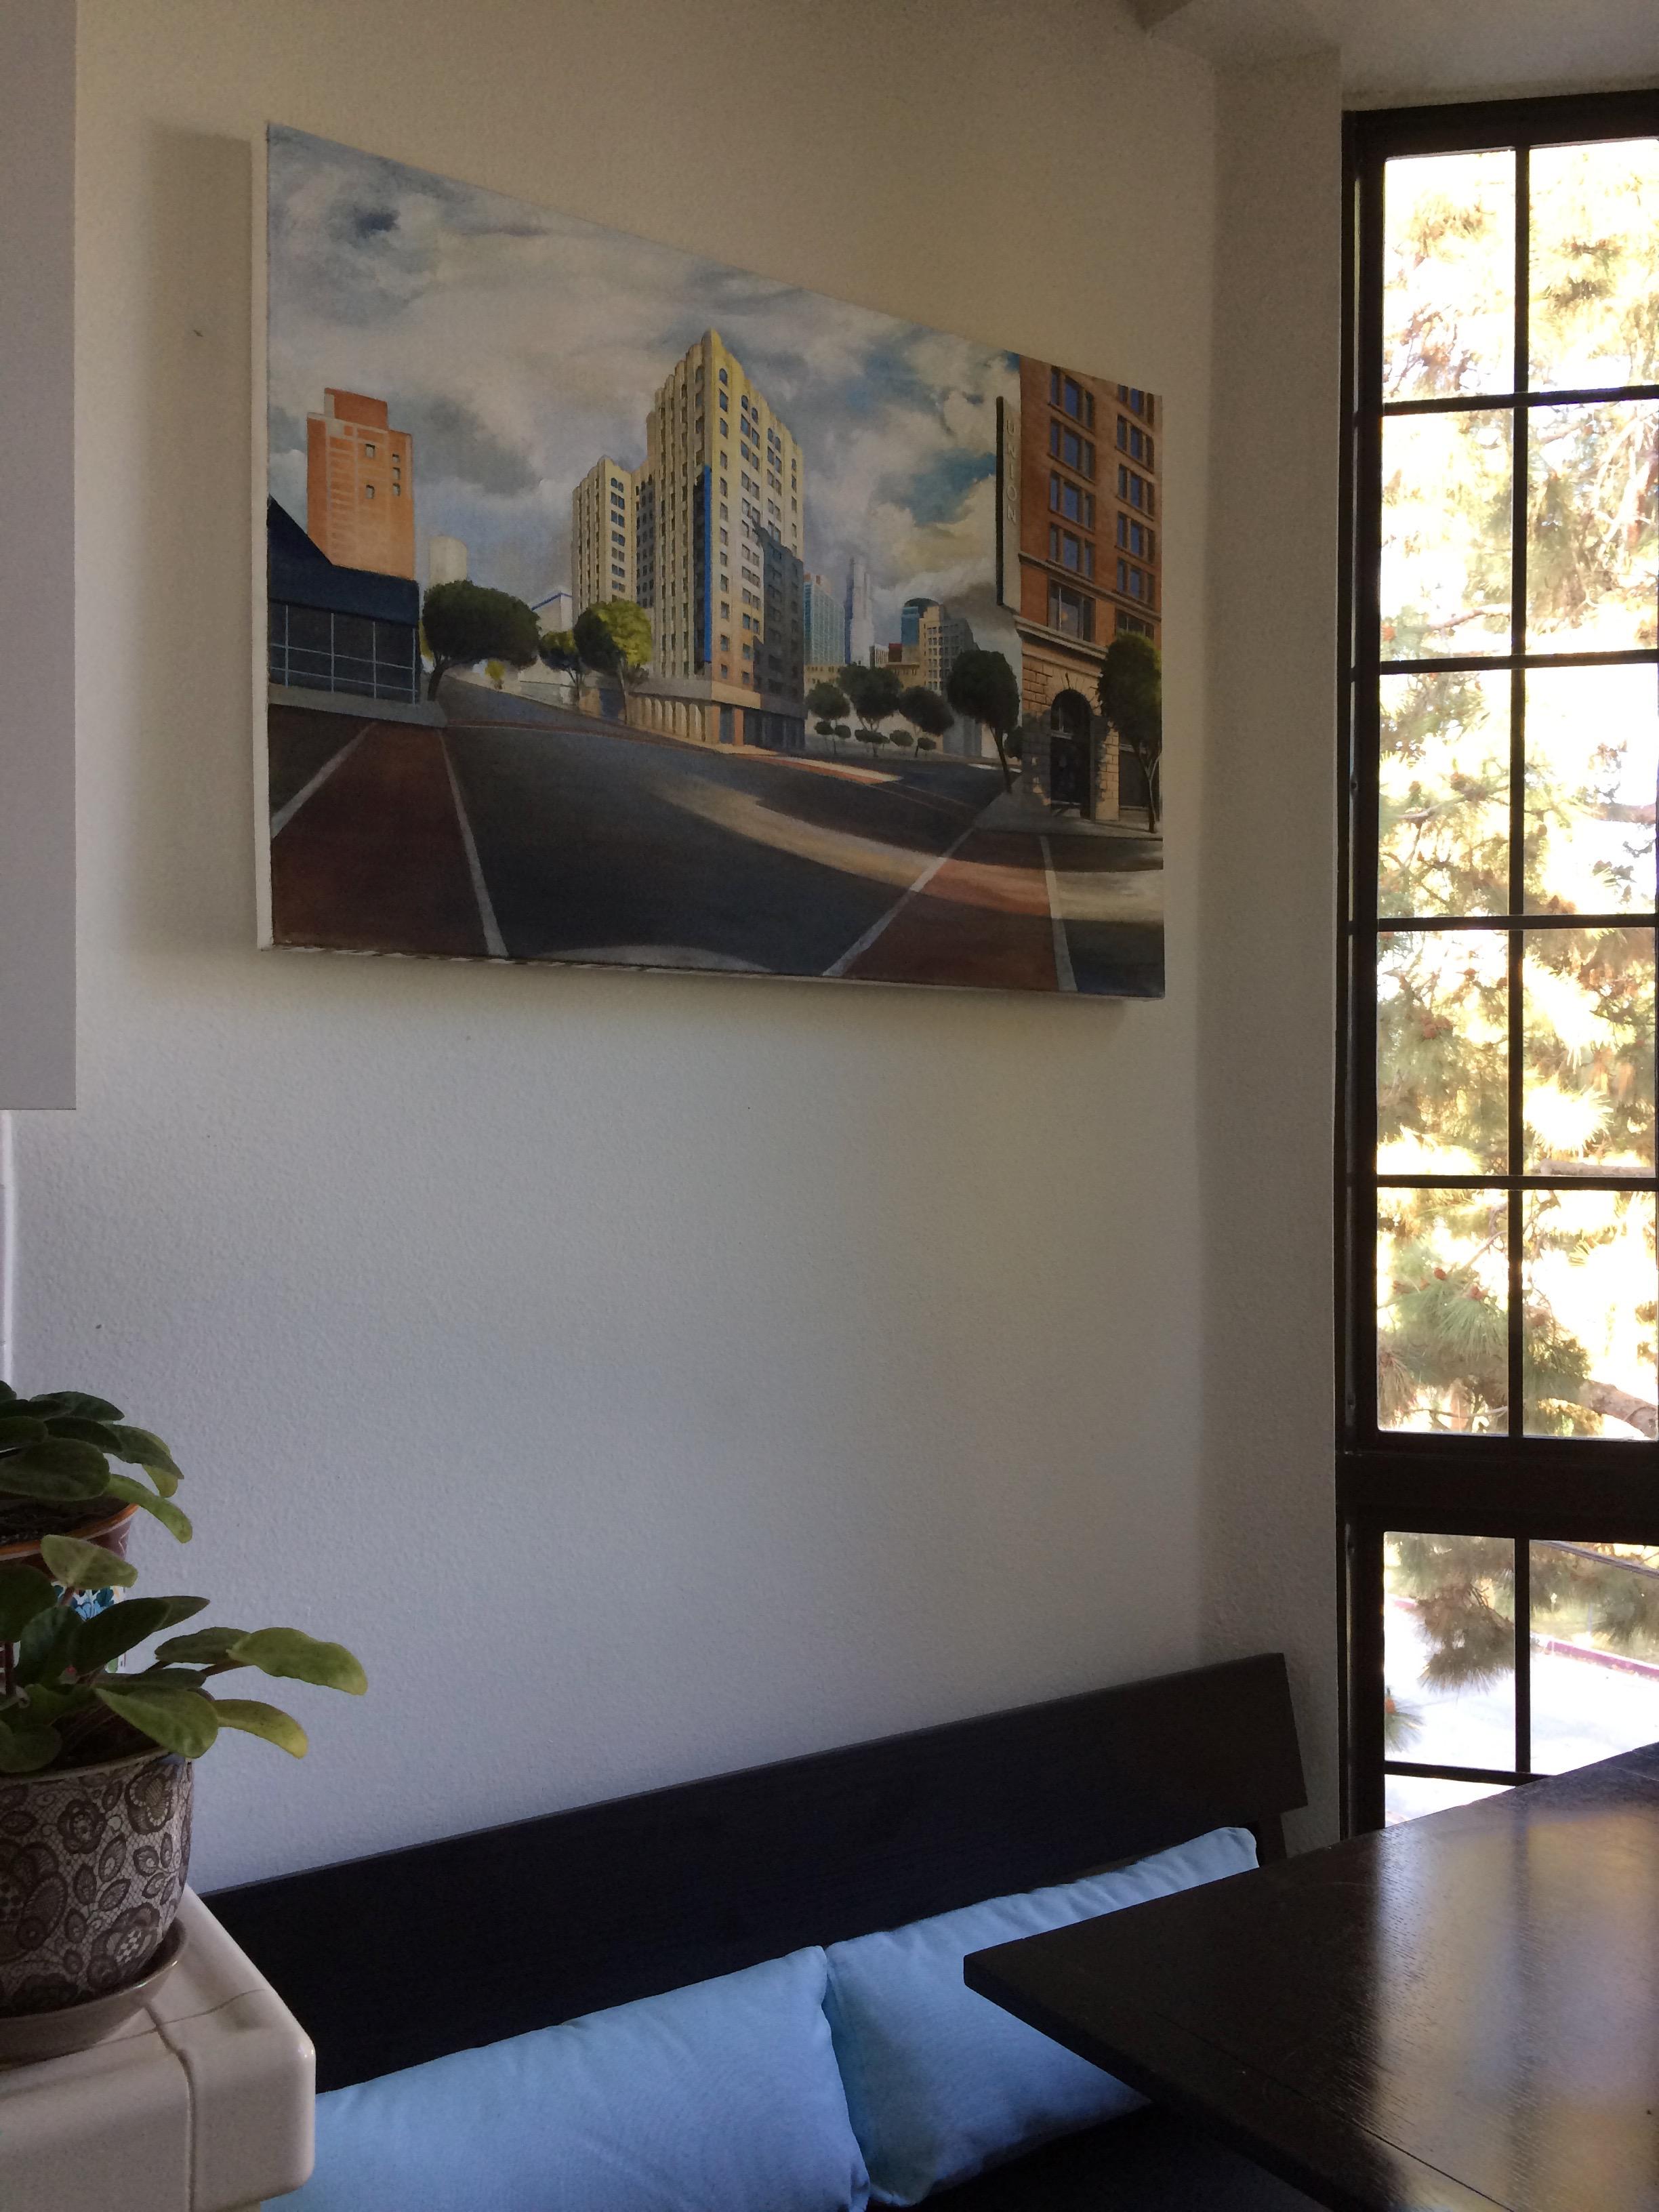 <p>Kommentare des Künstlers<br />Dieses Gemälde zeigt die Innenstadt von Los Angeles aus der Perspektive eines Fischauges.  Der Panoramablick umfasst die eklektische Mischung aus architektonischen Stilen und Epochen, die die Stadt in ihrem harten